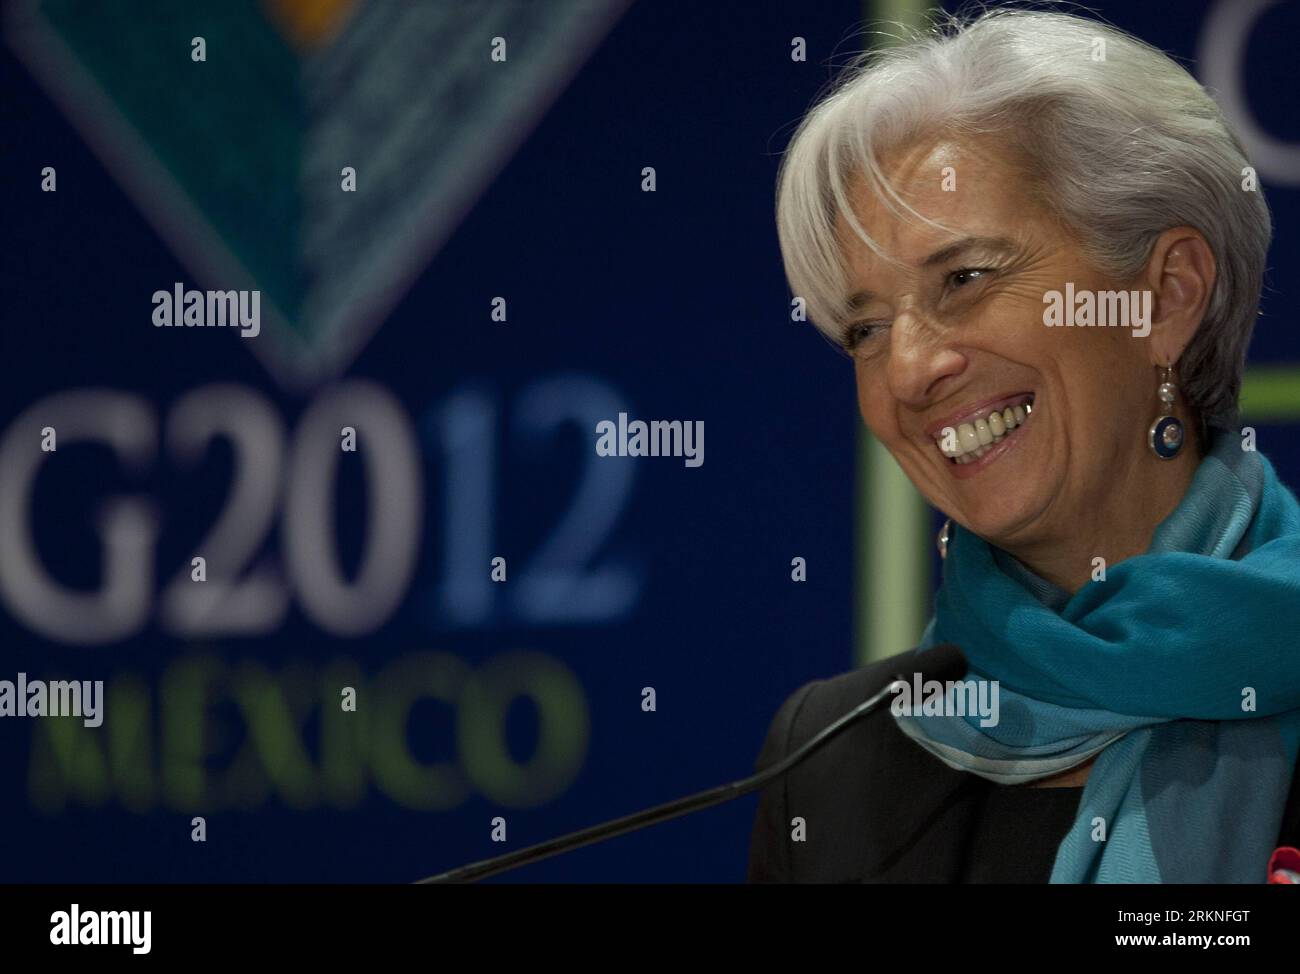 Bildnummer : 57111419 Datum : 25.02.2012 Copyright : imago/Xinhua (120227) -- MEXICO, 27 février 2012 (Xinhua) -- Christine Lagarde, directrice générale du Fonds monétaire international (FMI), assiste à une conférence de presse lors de la première réunion des ministres des Finances et des présidents des banques centrales du G20 à Mexico, capitale du Mexique, le 25 février 2012. La première réunion des ministres des Finances et des présidents des banques centrales du G20 s’est achevée dimanche. (Xinhua/Shi Sisi) (zyw) MEXICO-MEXICO CITY-G20 PUBLICATIONxNOTxINxCHN People Politik Wirtschaft G20 G 20 premiumd xsp x0x 2012 quer 57111 Banque D'Images